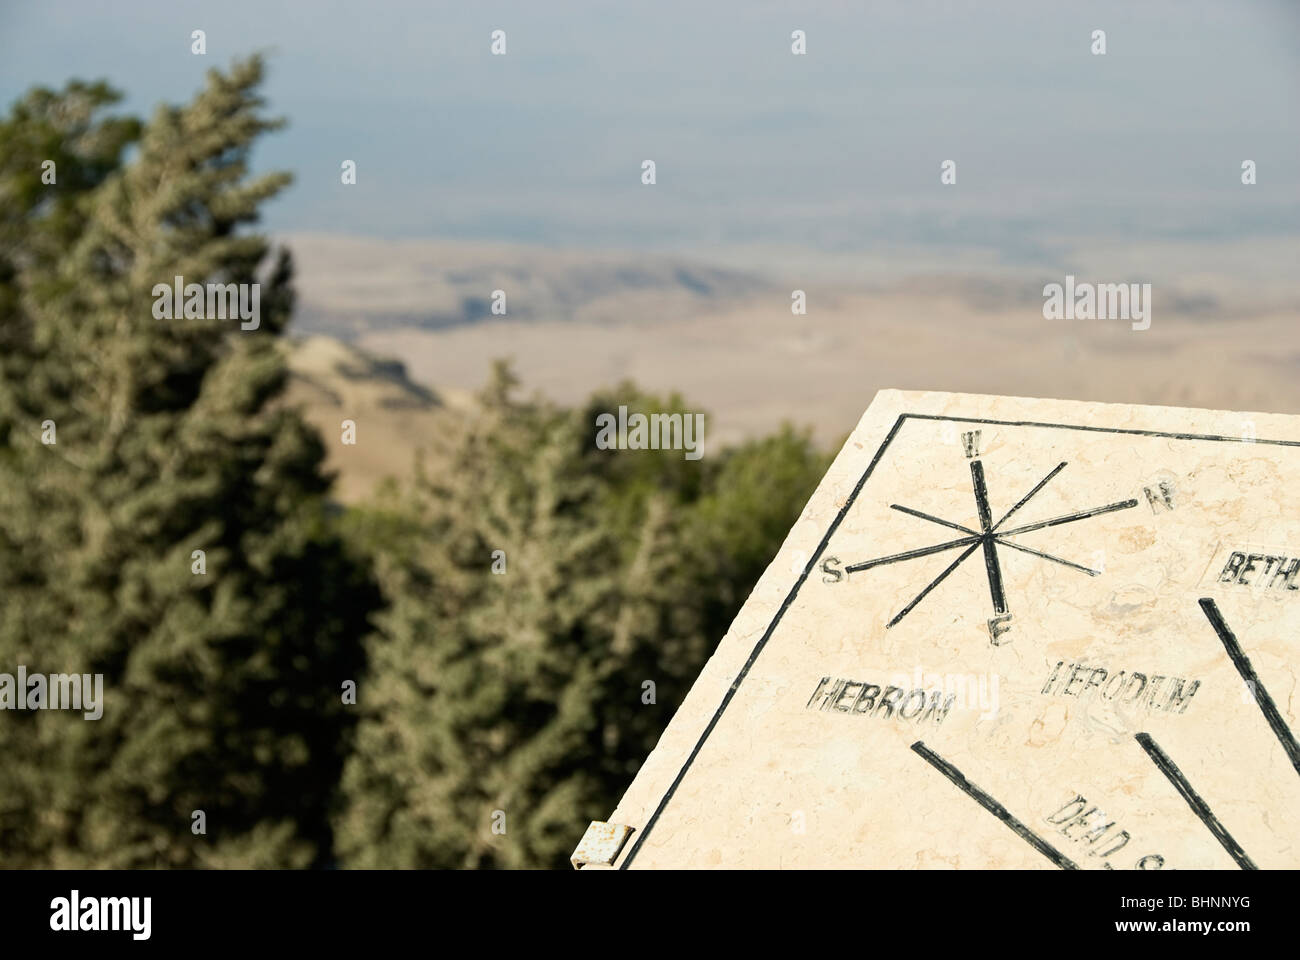 Panneau pointant vers la terre promise au mont Nebo, Jordanie, Asie. Banque D'Images